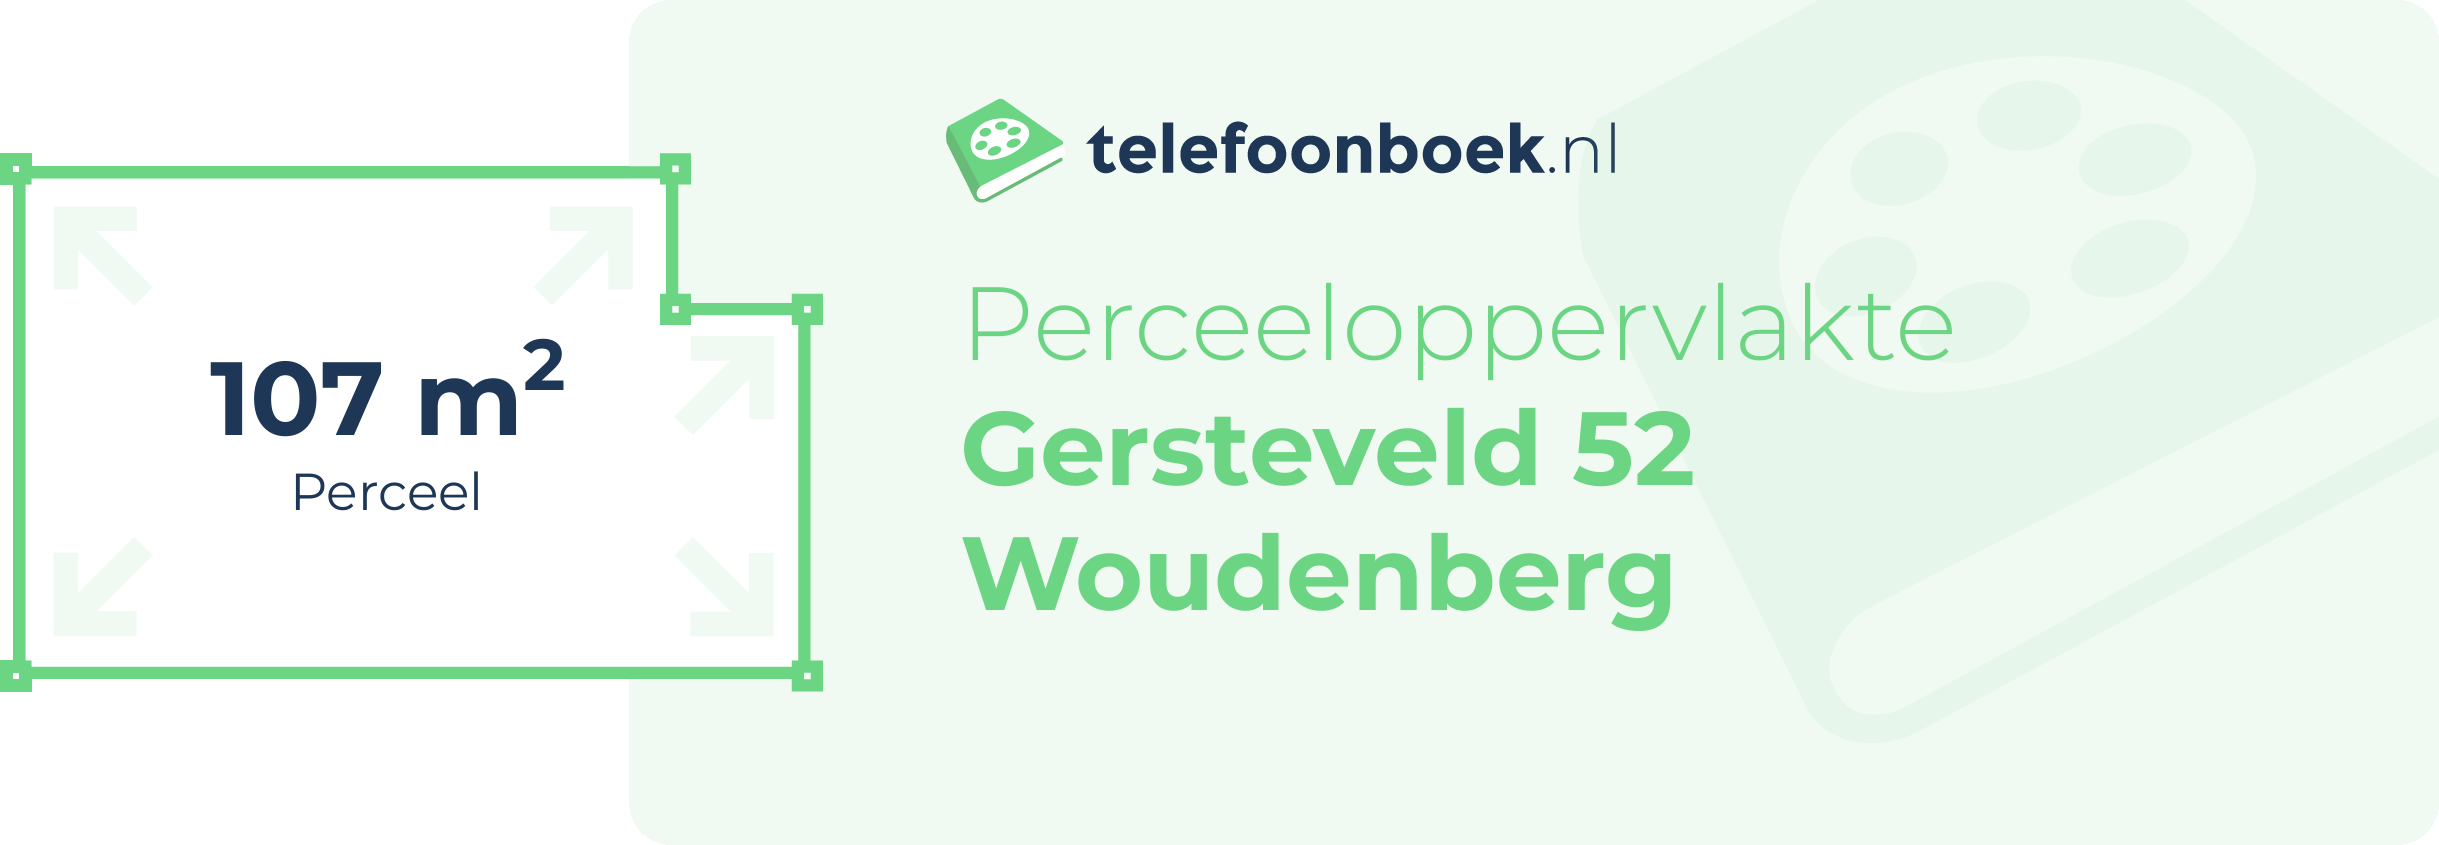 Perceeloppervlakte Gersteveld 52 Woudenberg